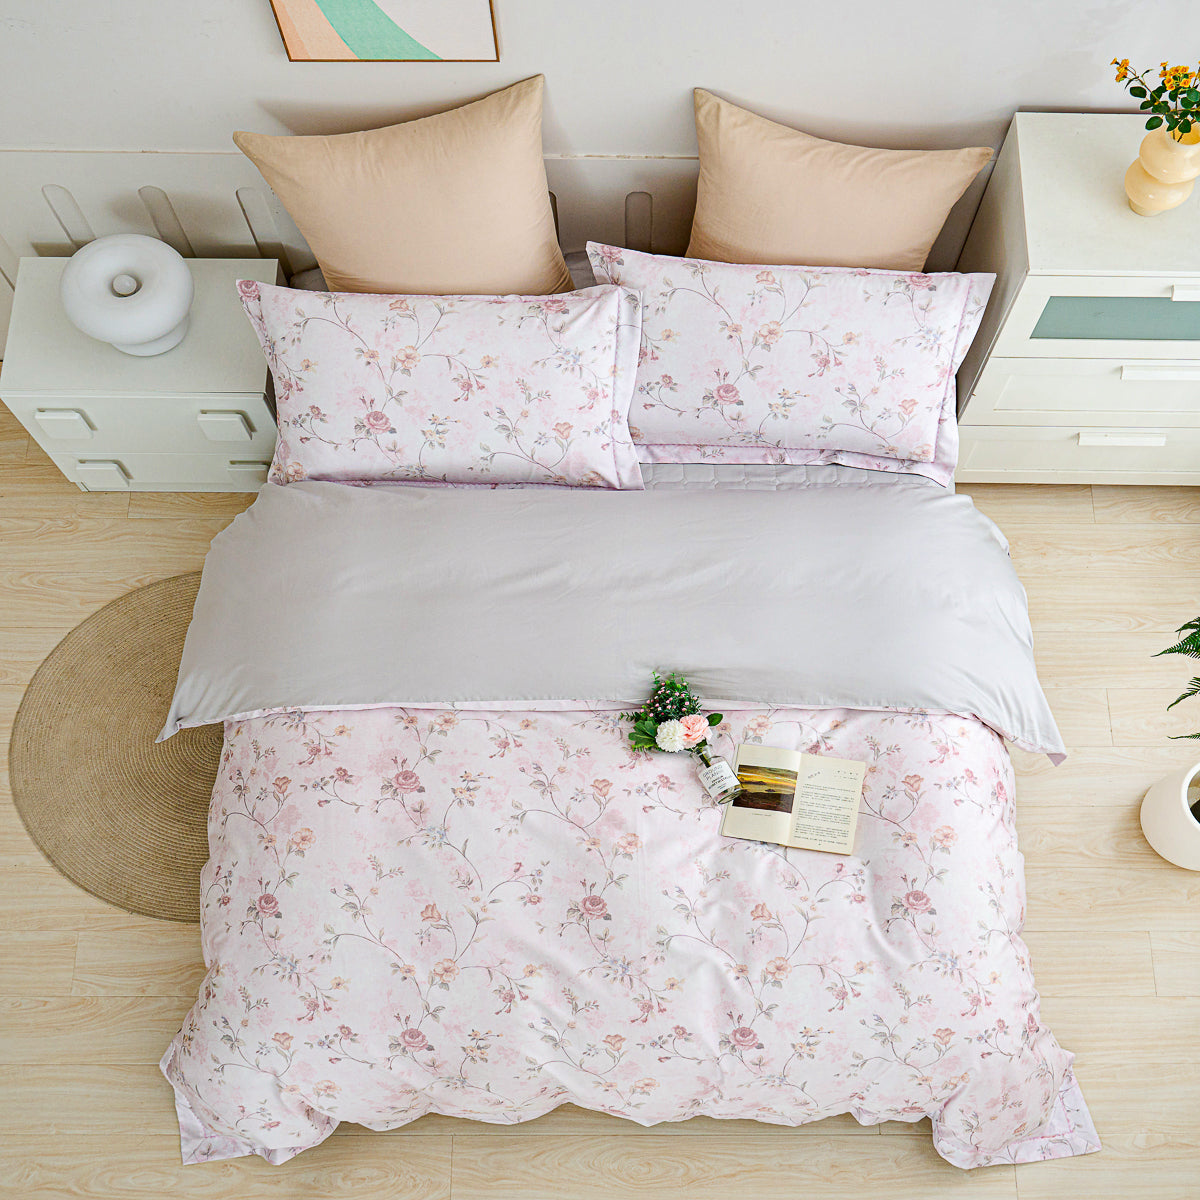 Rozy Floral Premium Cotton Bedspread Set